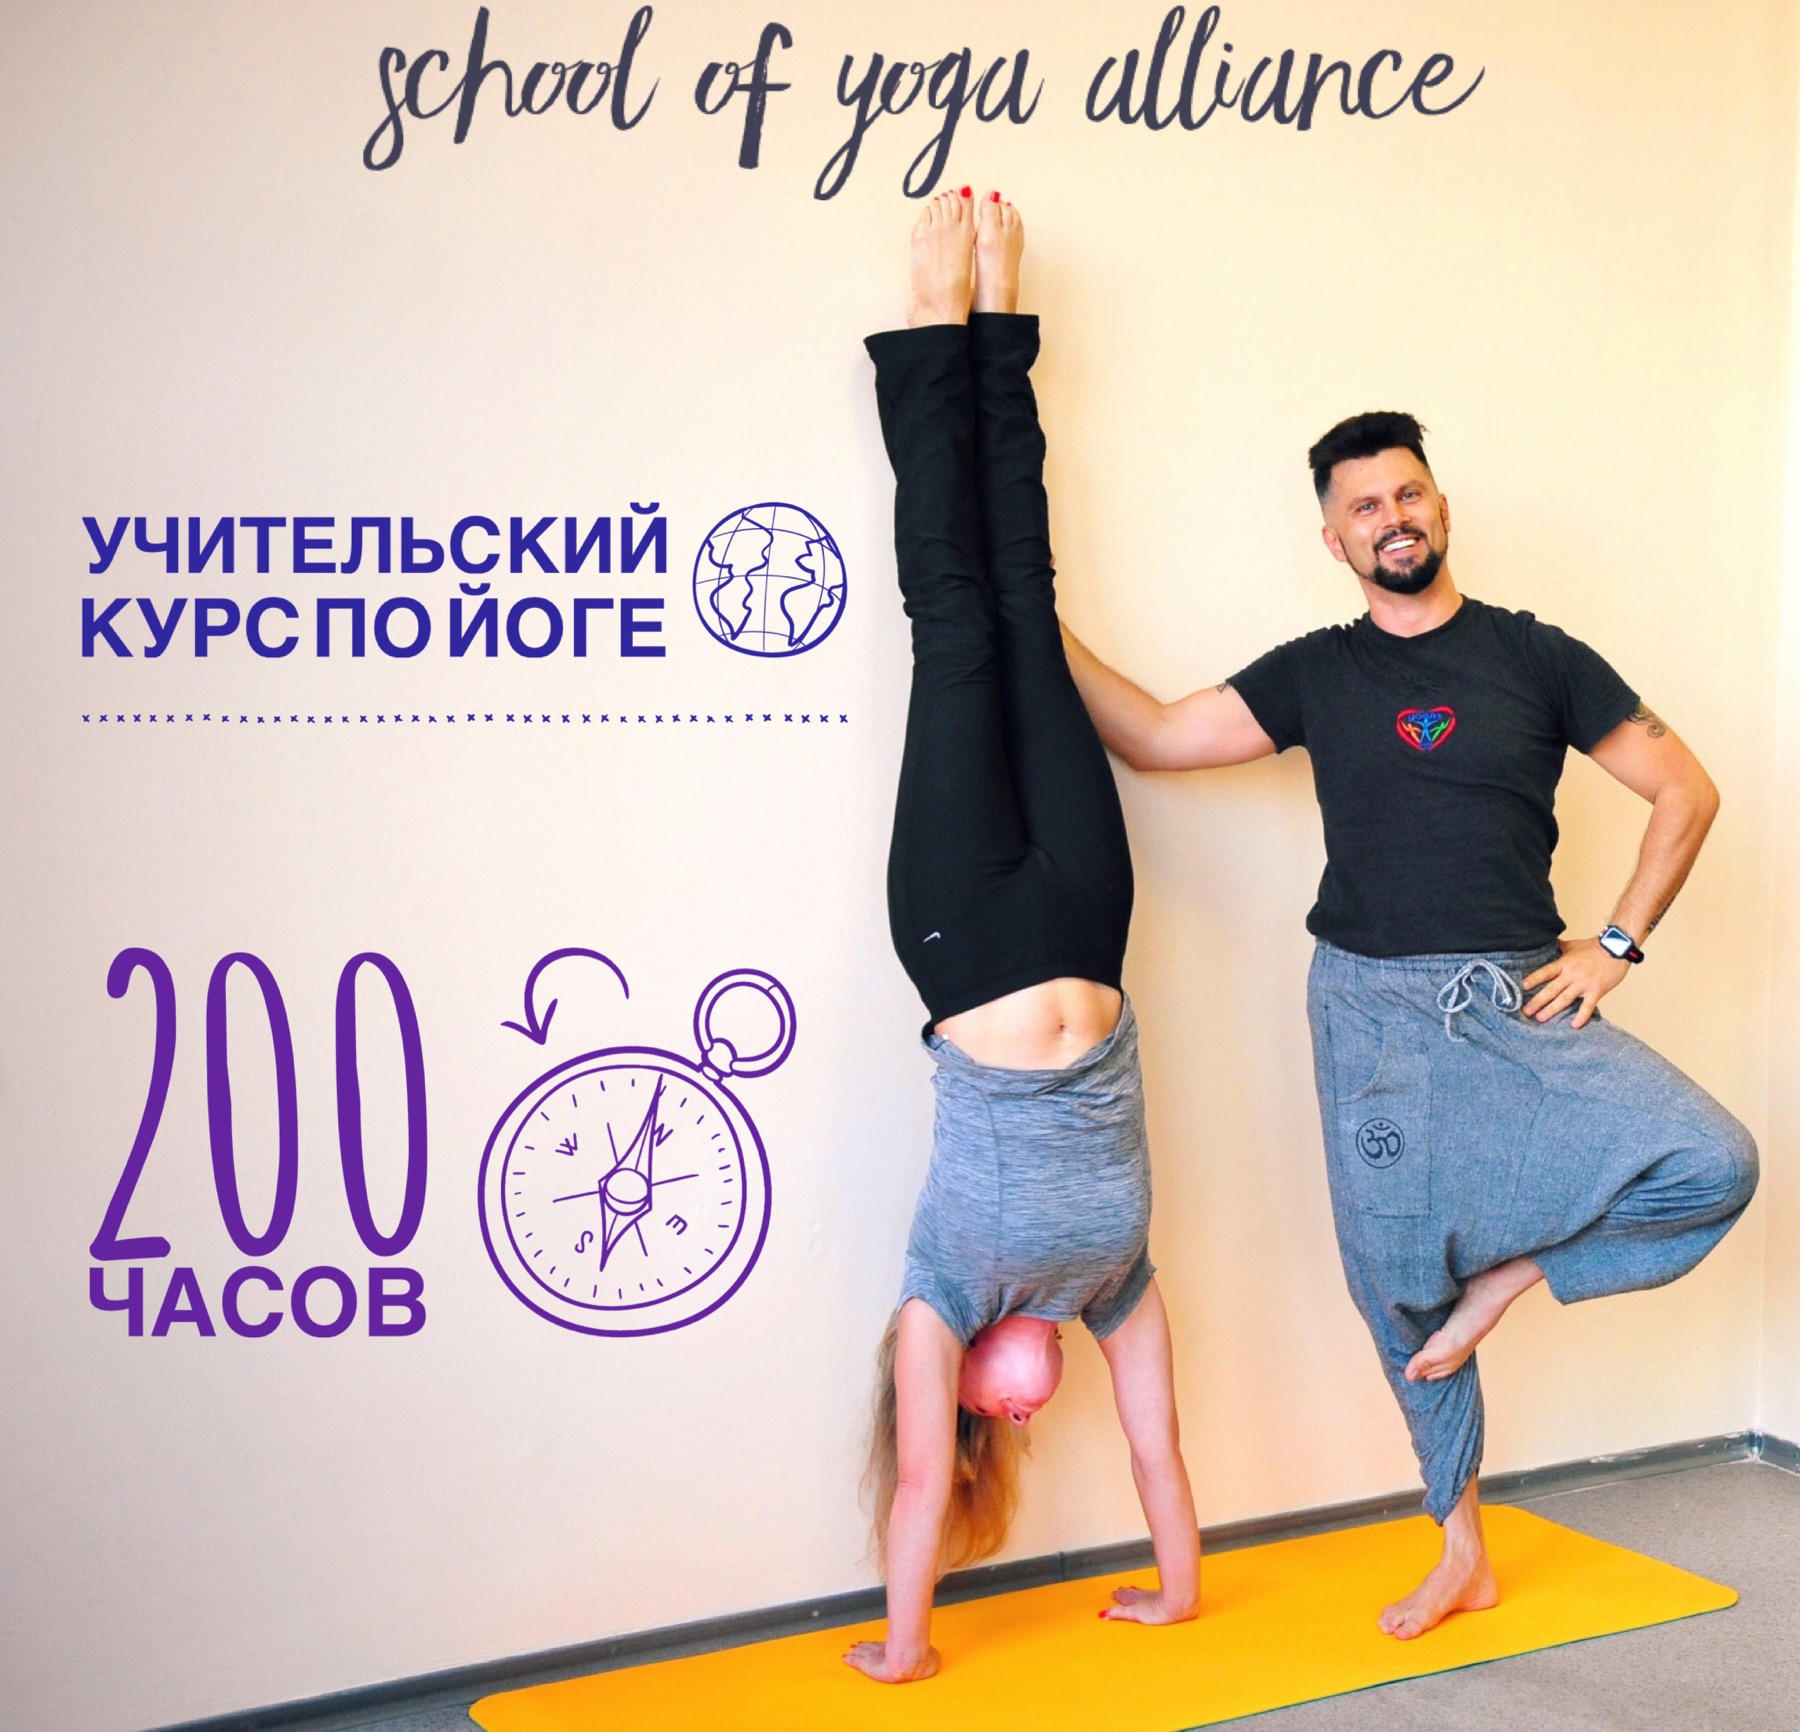 200 часовой Индивидуальный Учительский курс по Йоге, Харьков